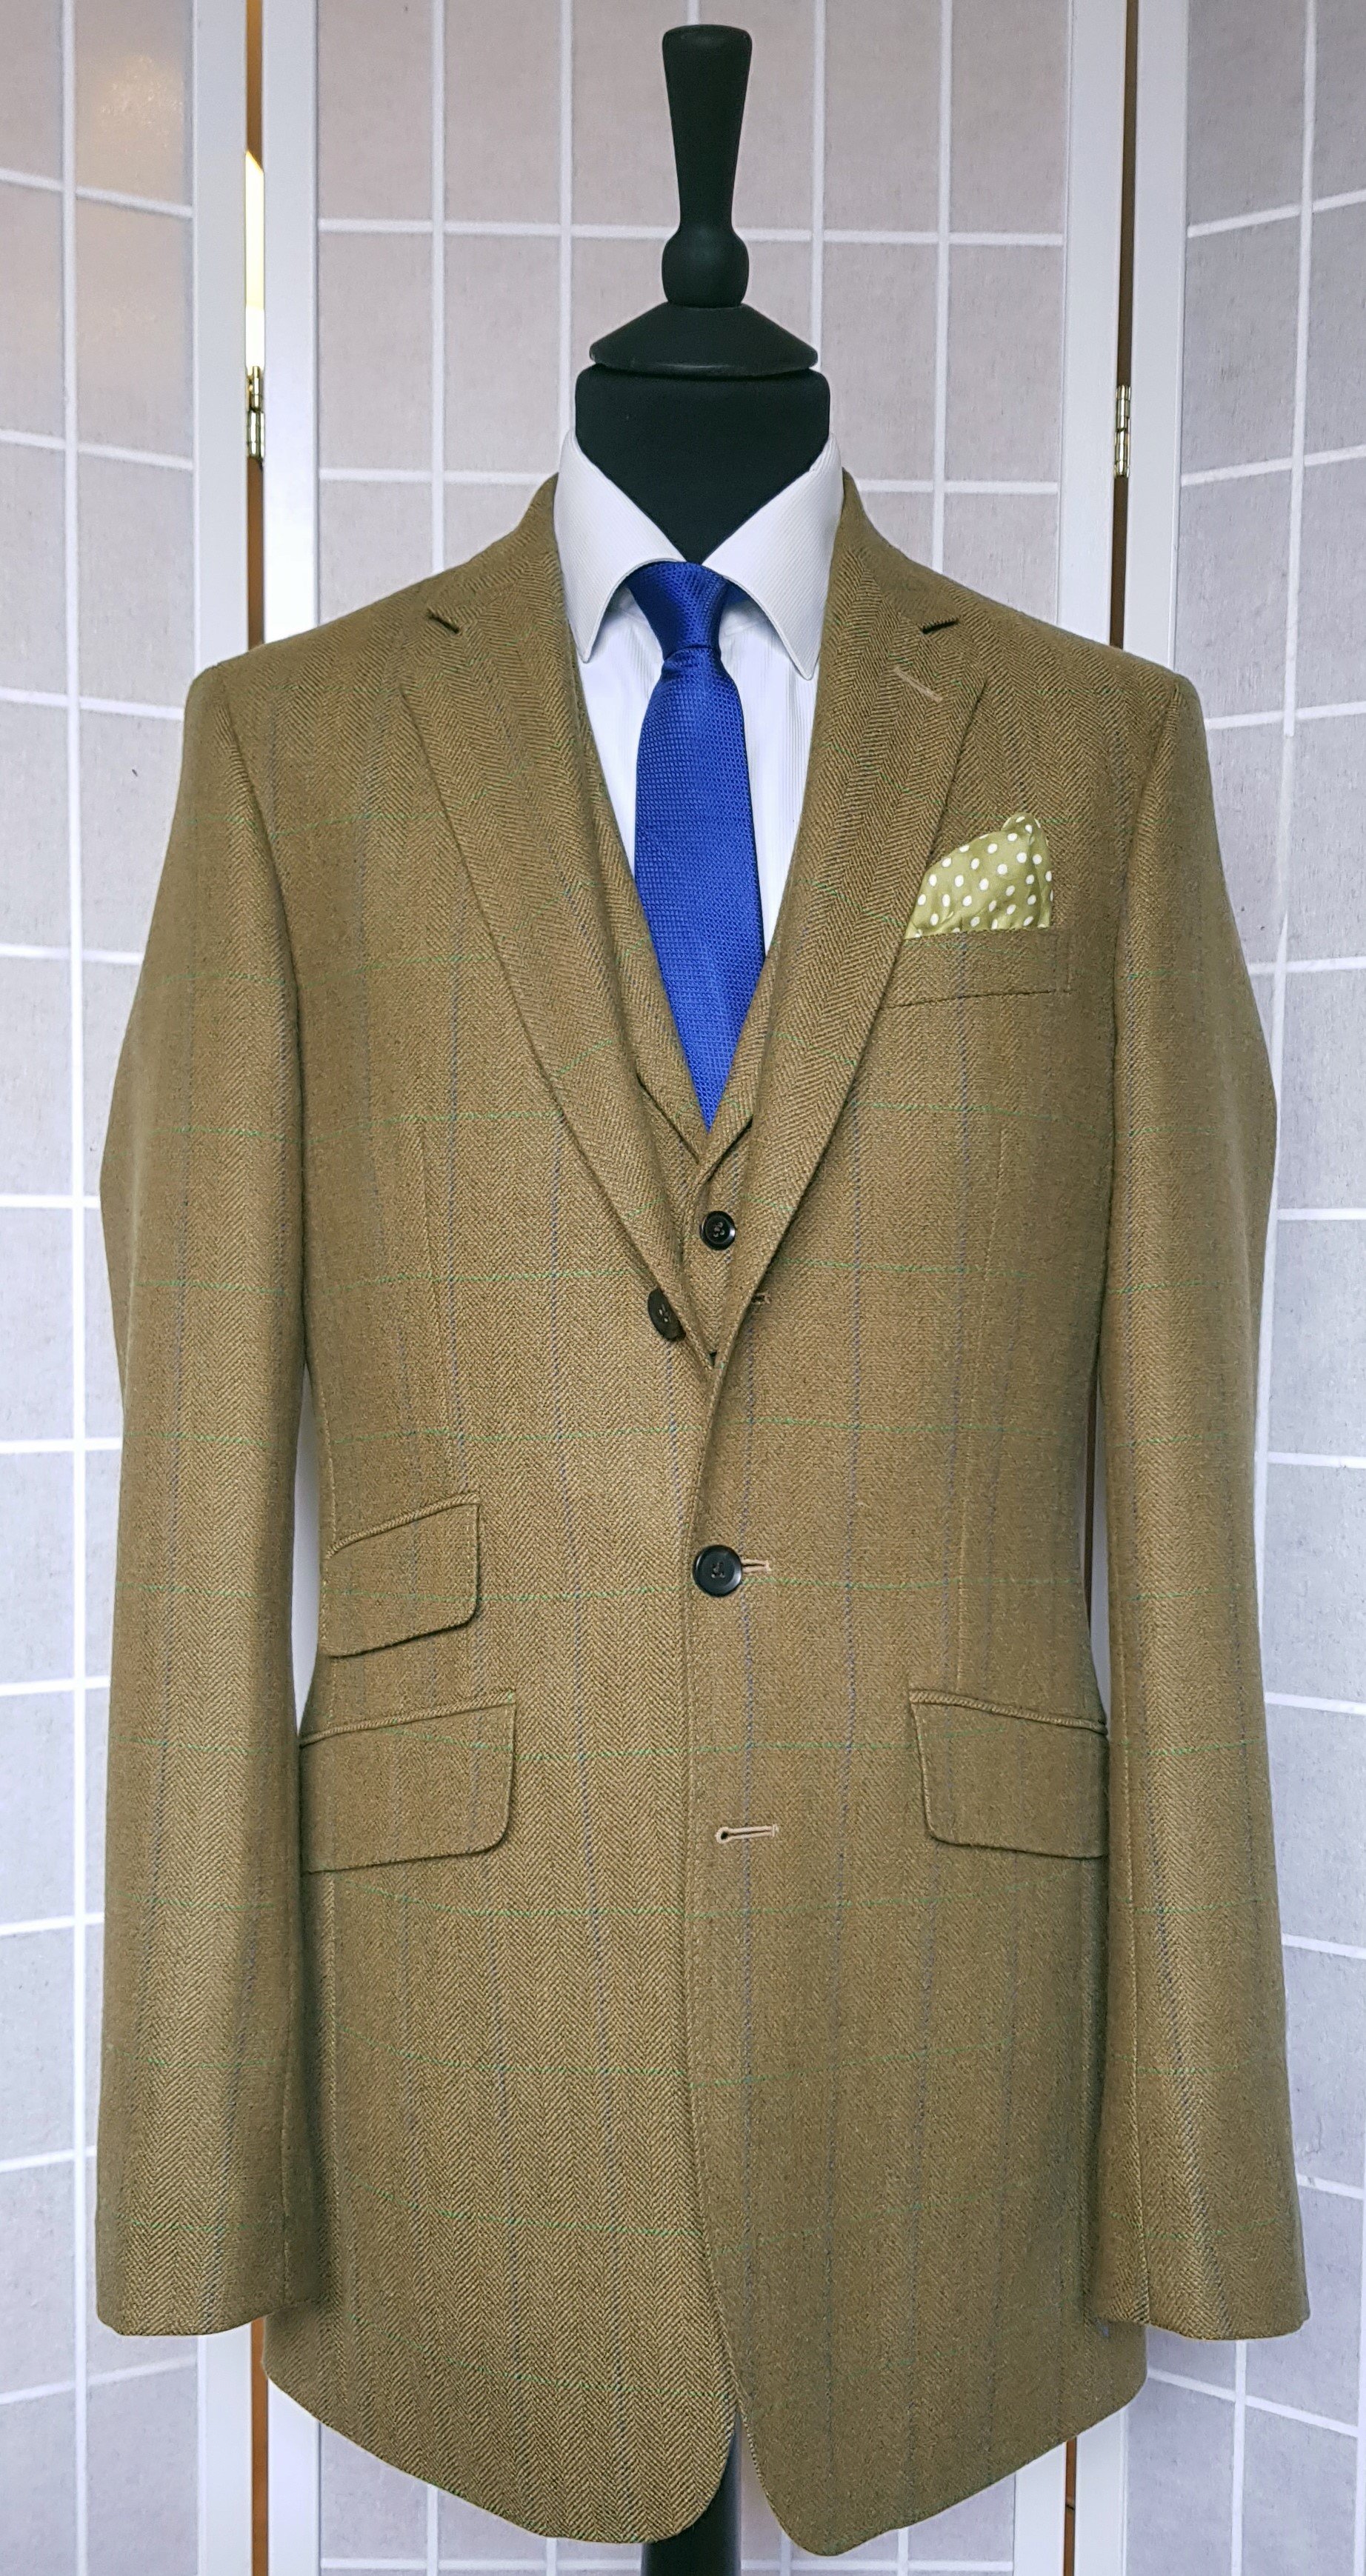 3 Piece suit in Glenroyal Tweed (2).jpg